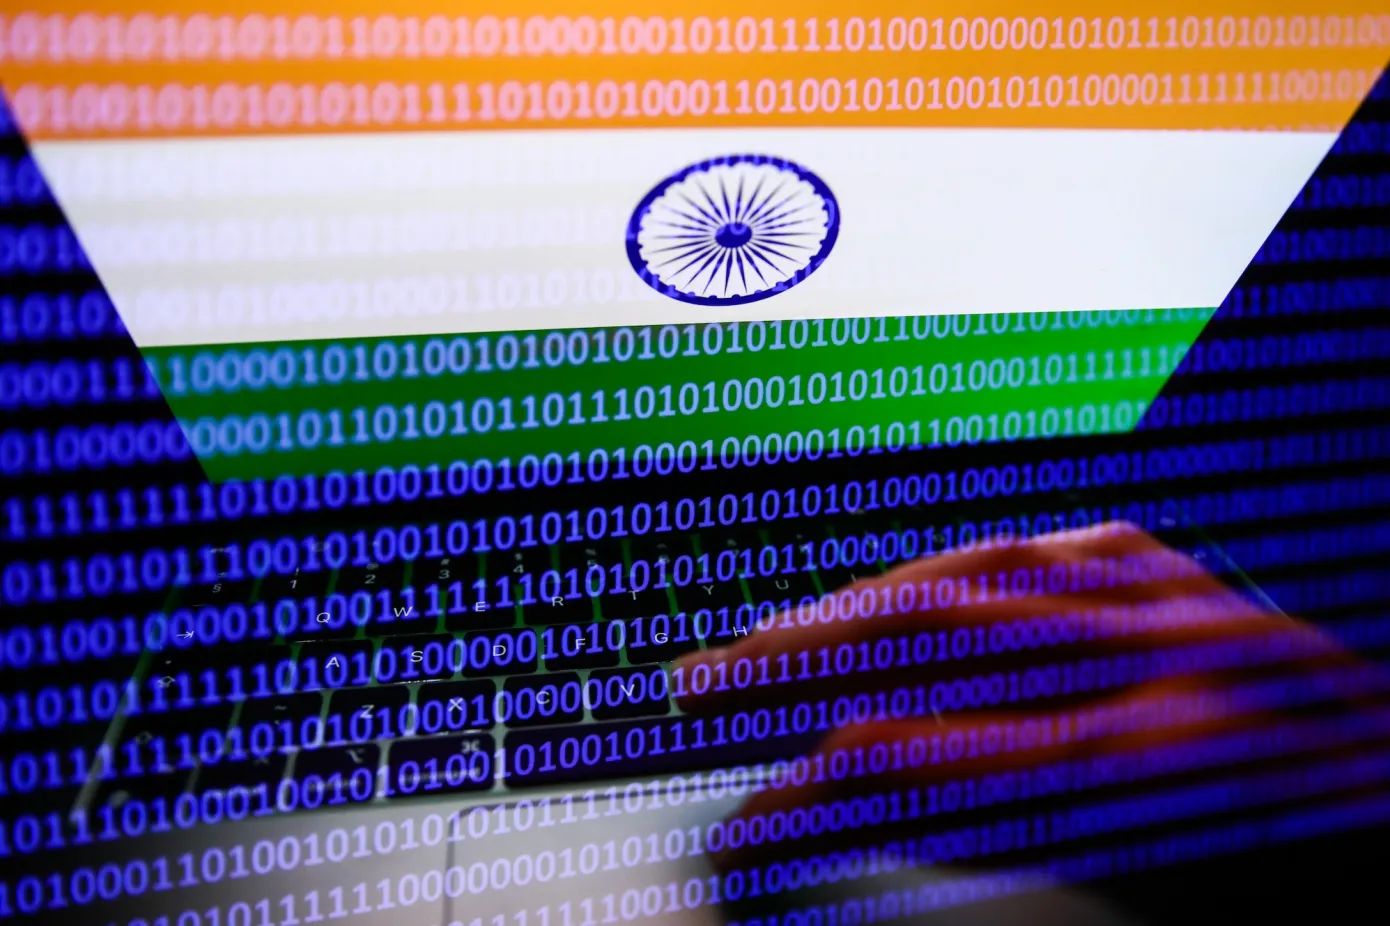 印度政府解决了多年的云网络安全中公民敏感数据问题-indiangovermrnt 